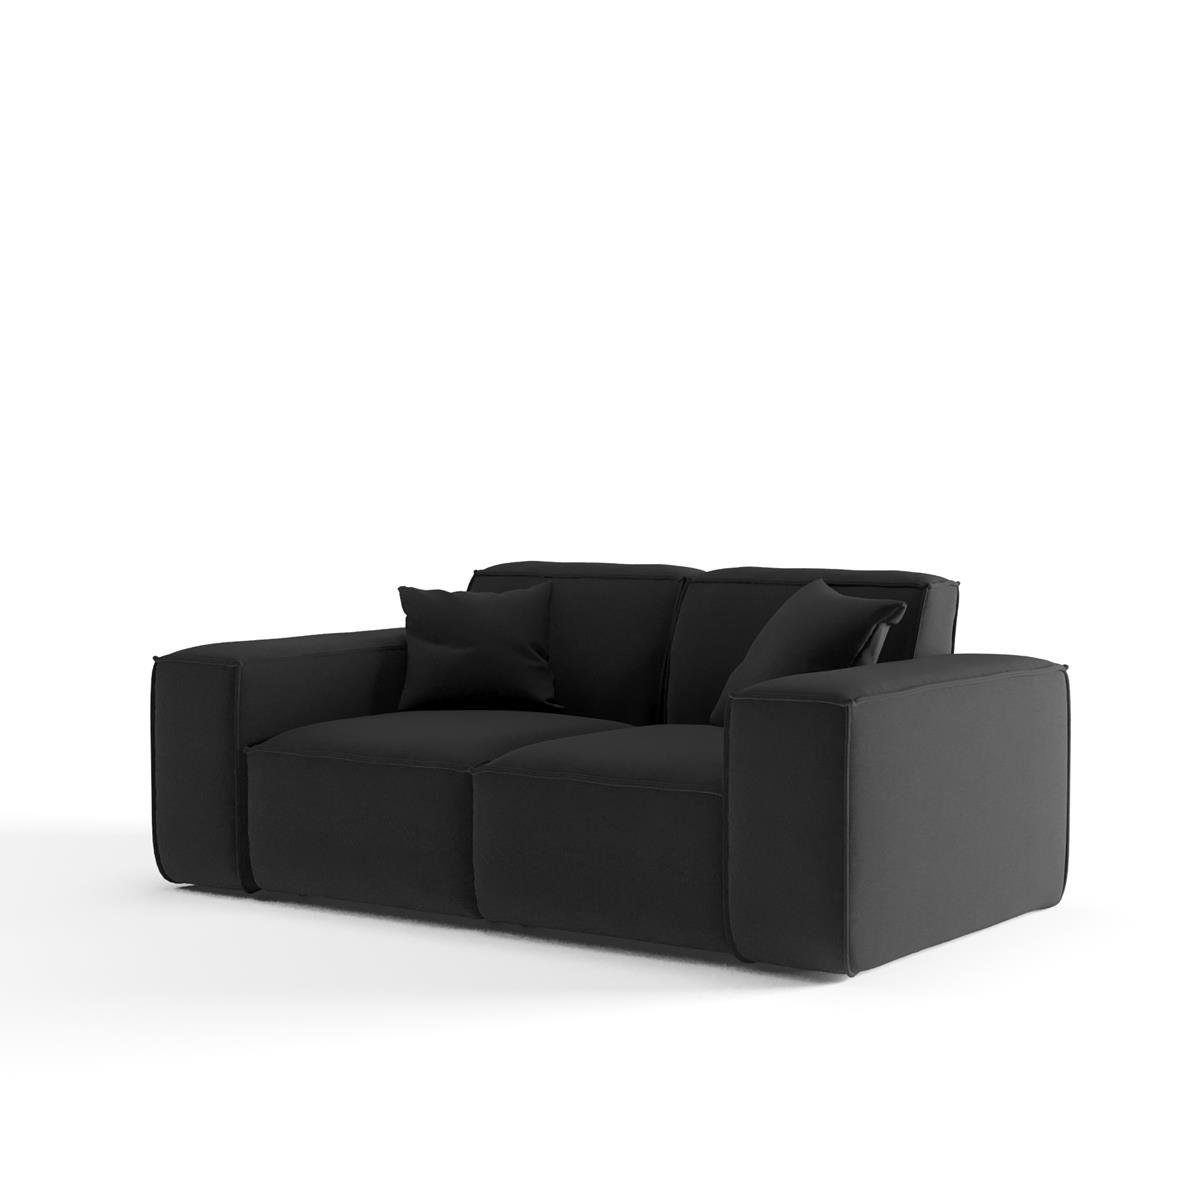 Beautysofa Sofa Lugano, 2-Sitzer Sofa oder Breite Wellenfedern, aus Zweisitzer im inlusive Stil, Velourstoff, Cordstoff Armlehnen modernes mit